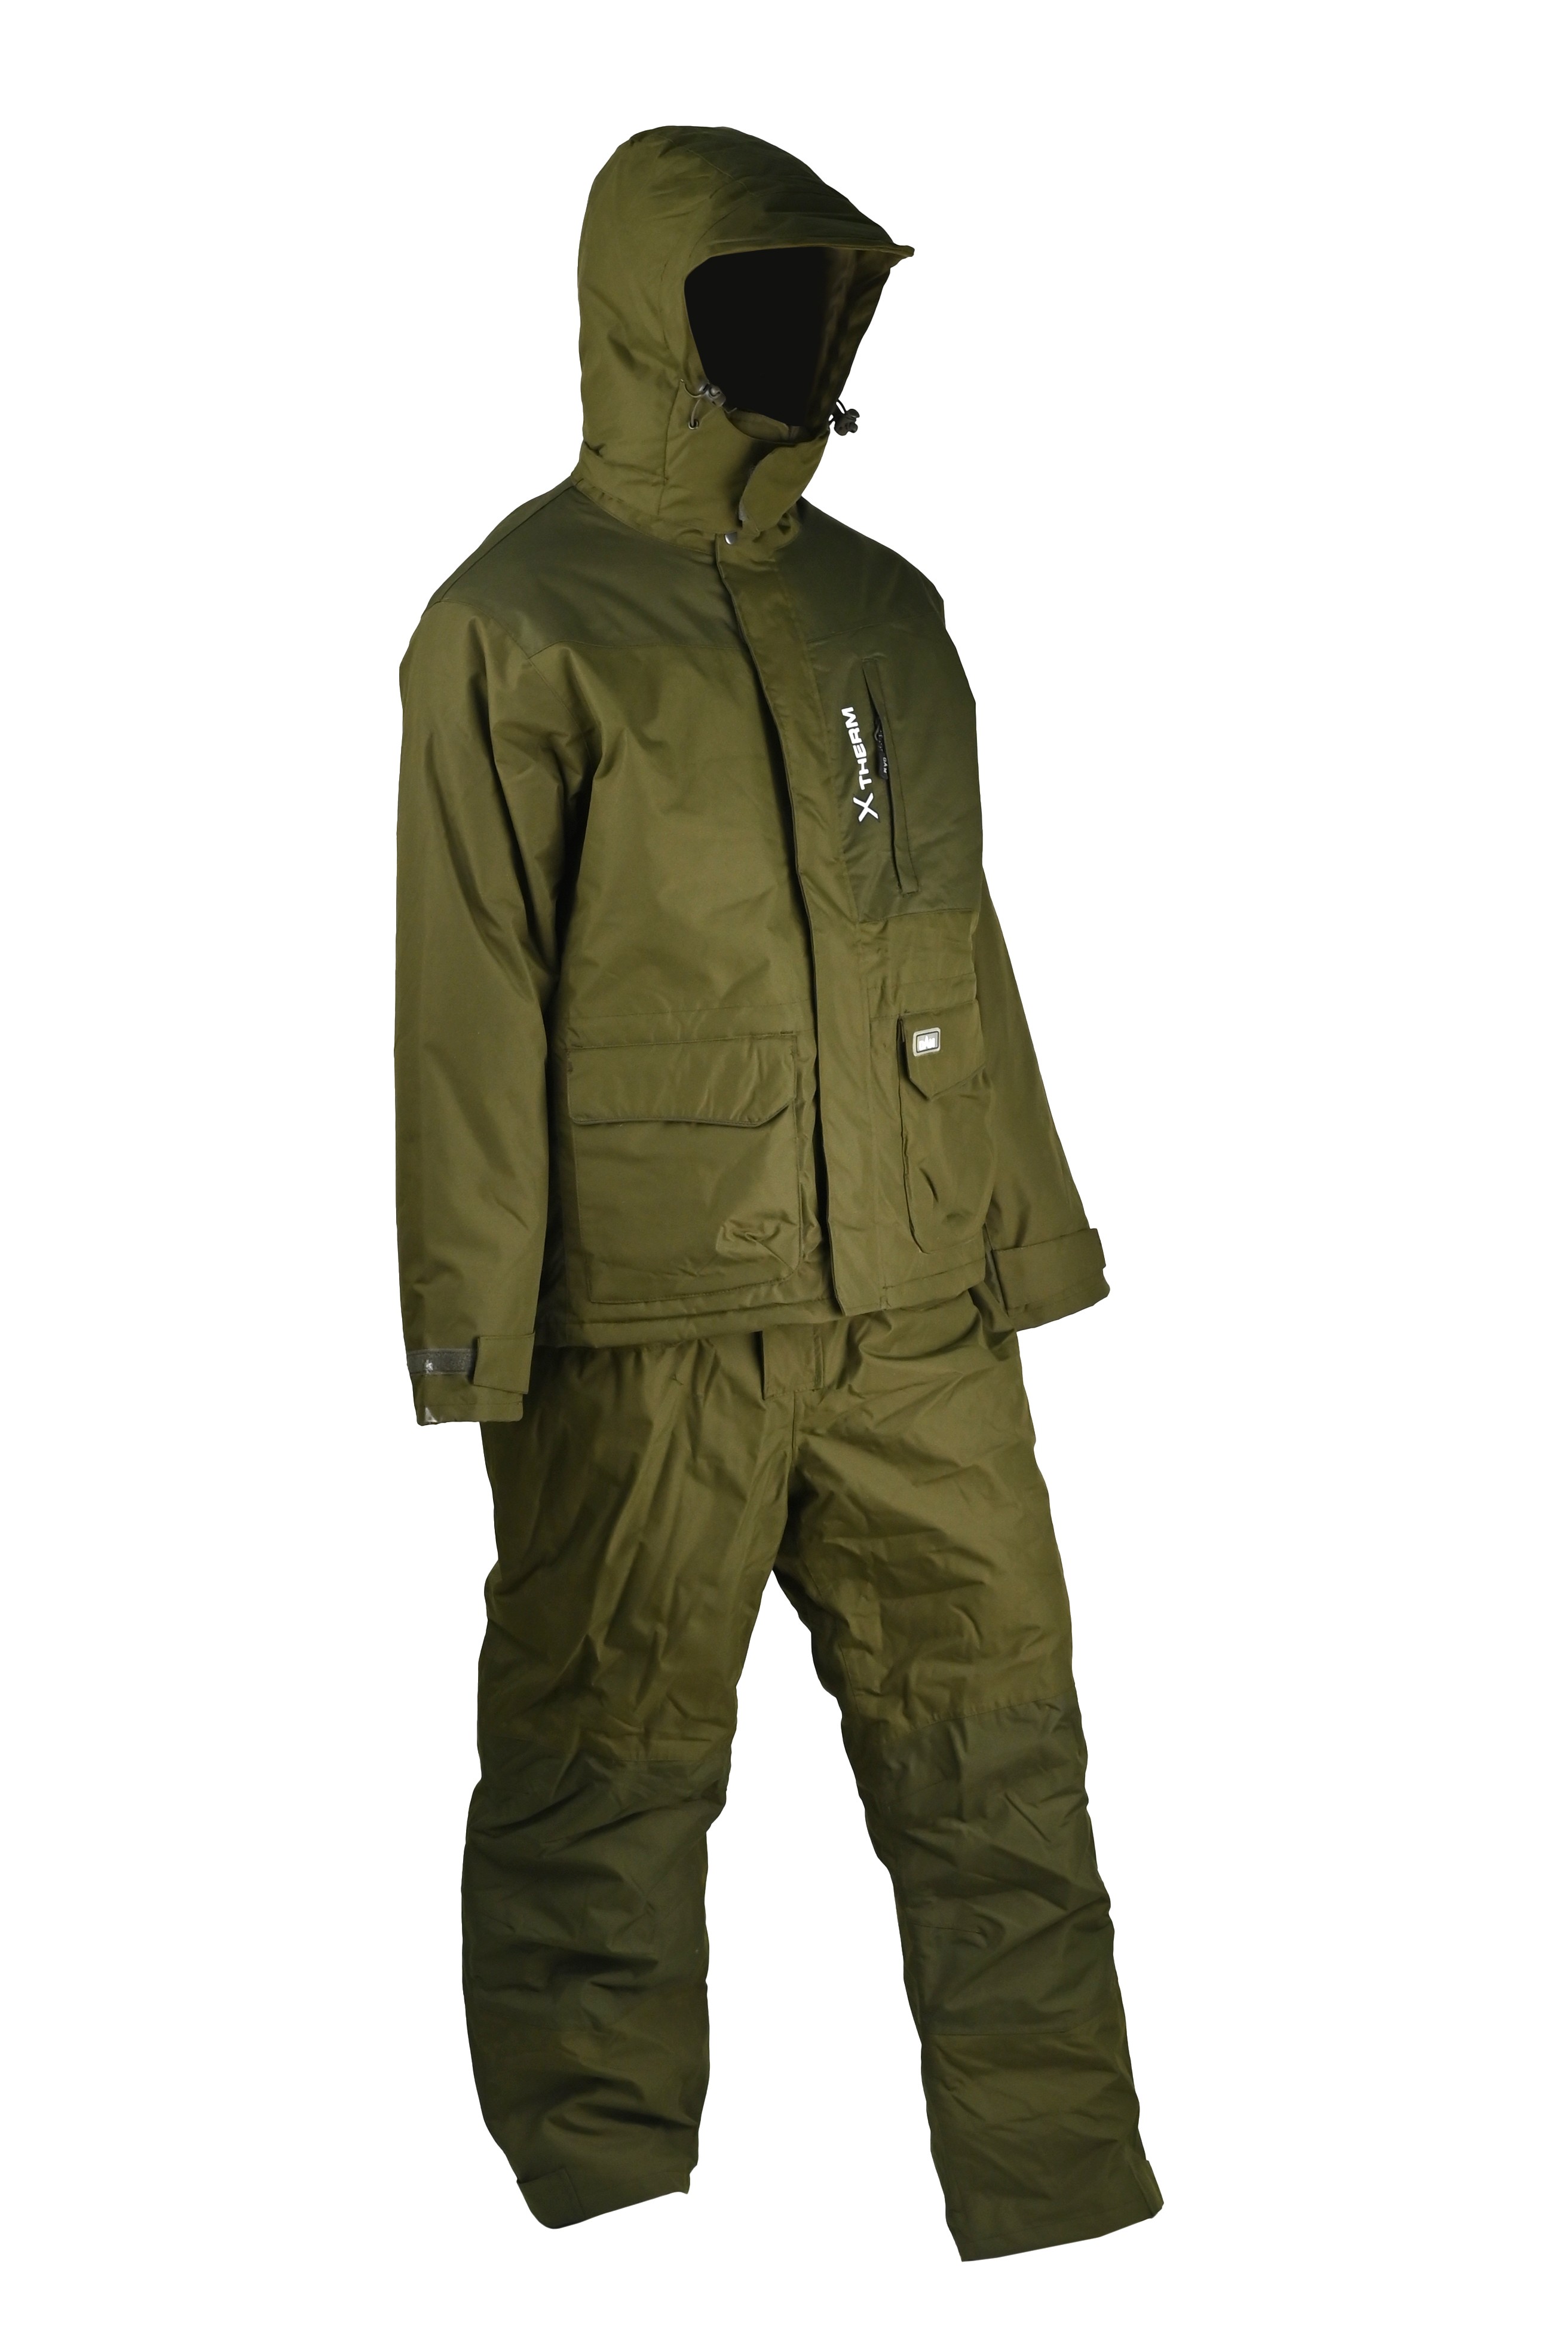 Костюм DAM Xtherm Winter Suit green р.XXL - фото 1